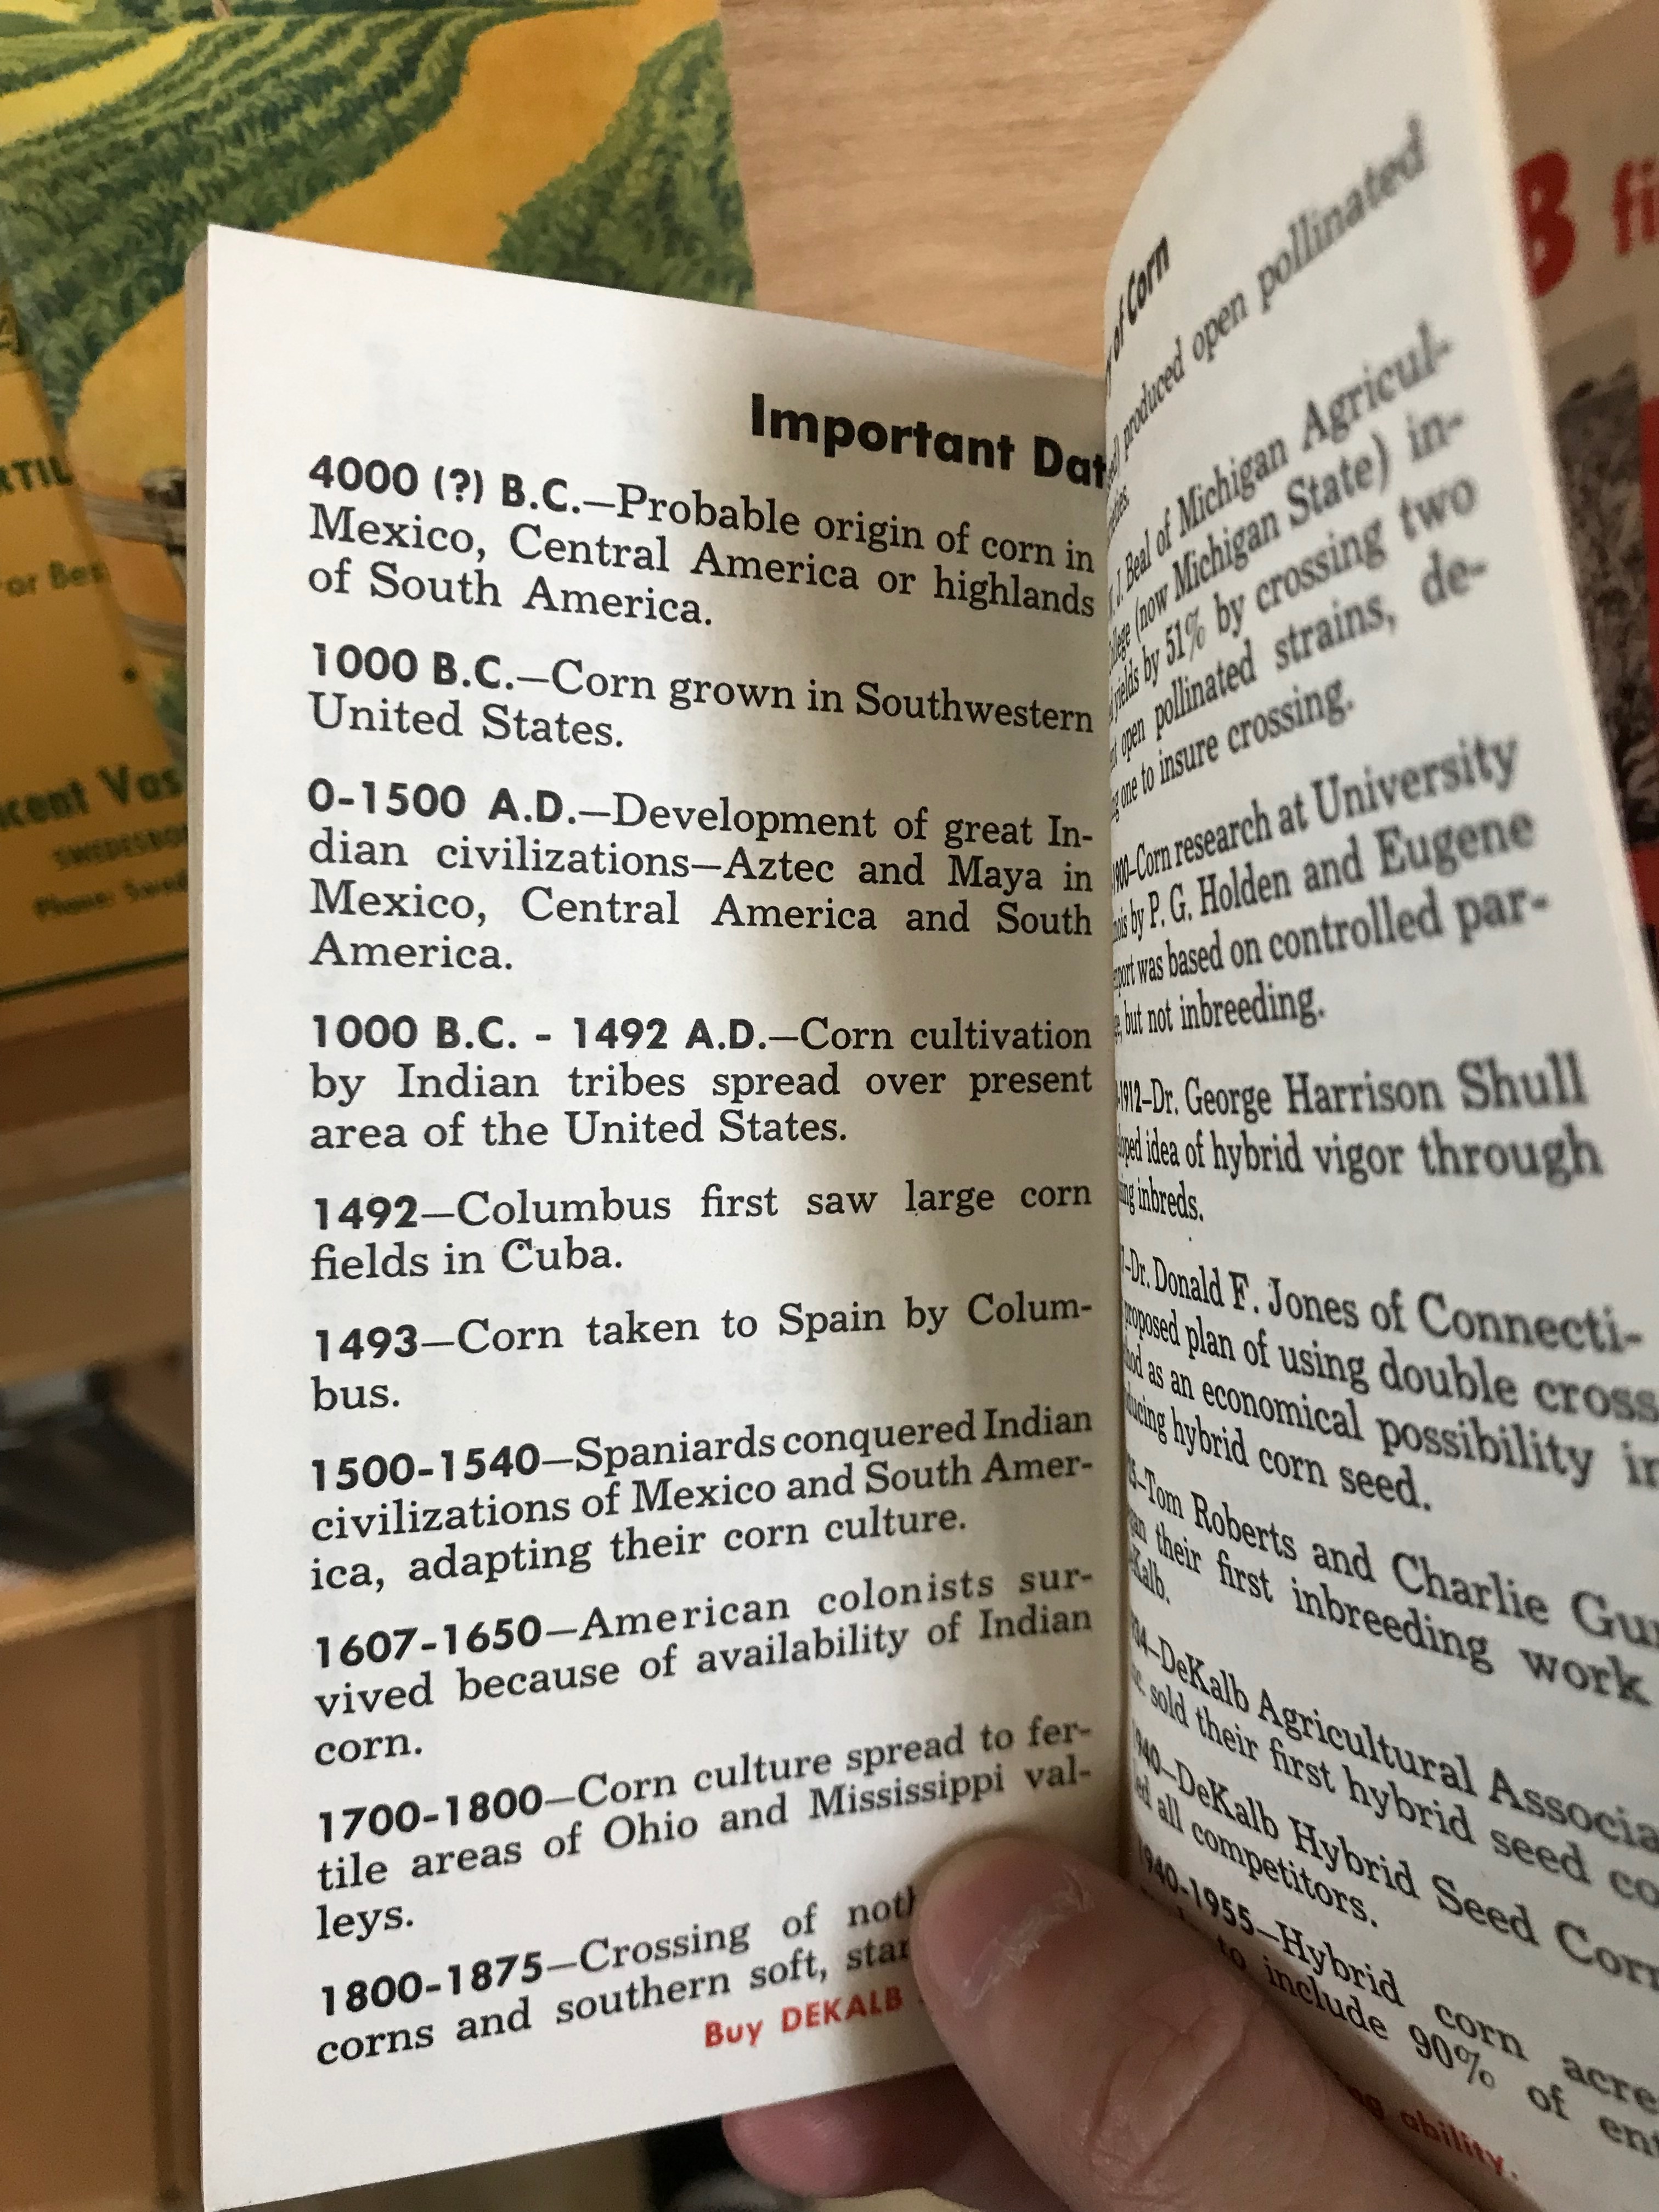 Important dates from Dekalb Memo Book